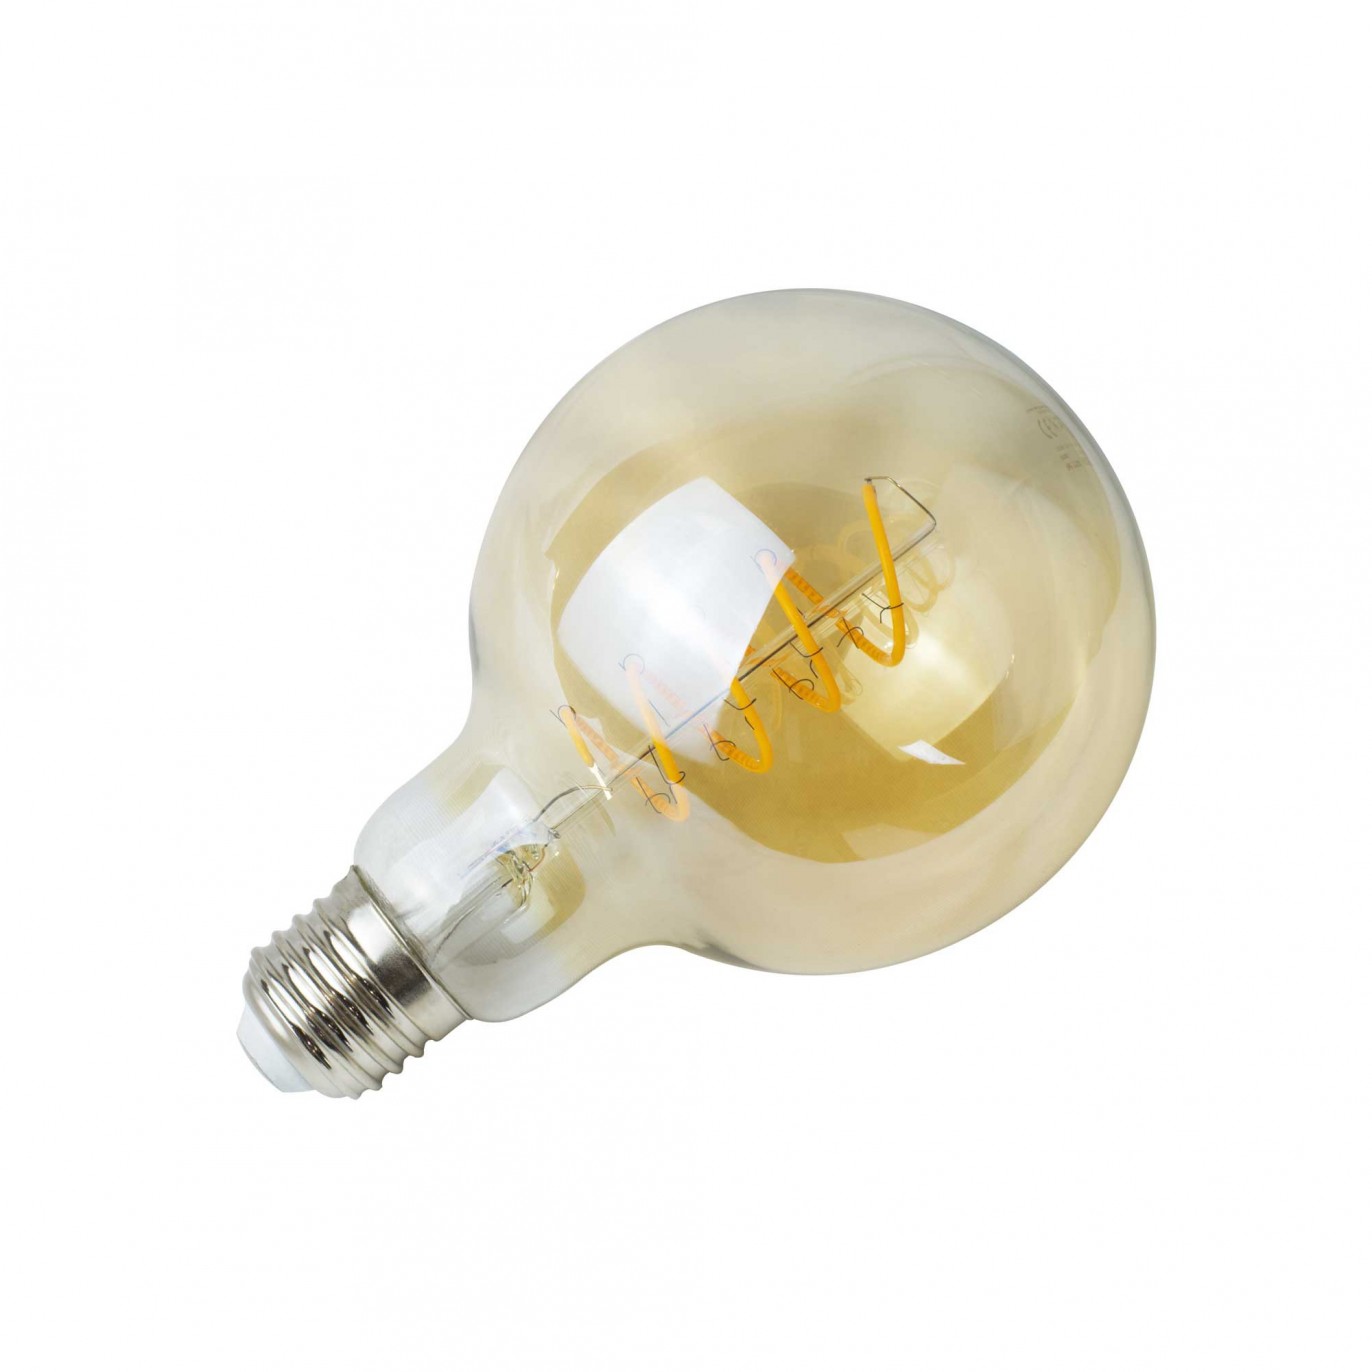 Ampoule LED LONDRES - E27 - Intensité moyenne - Blanc chaud - 4W